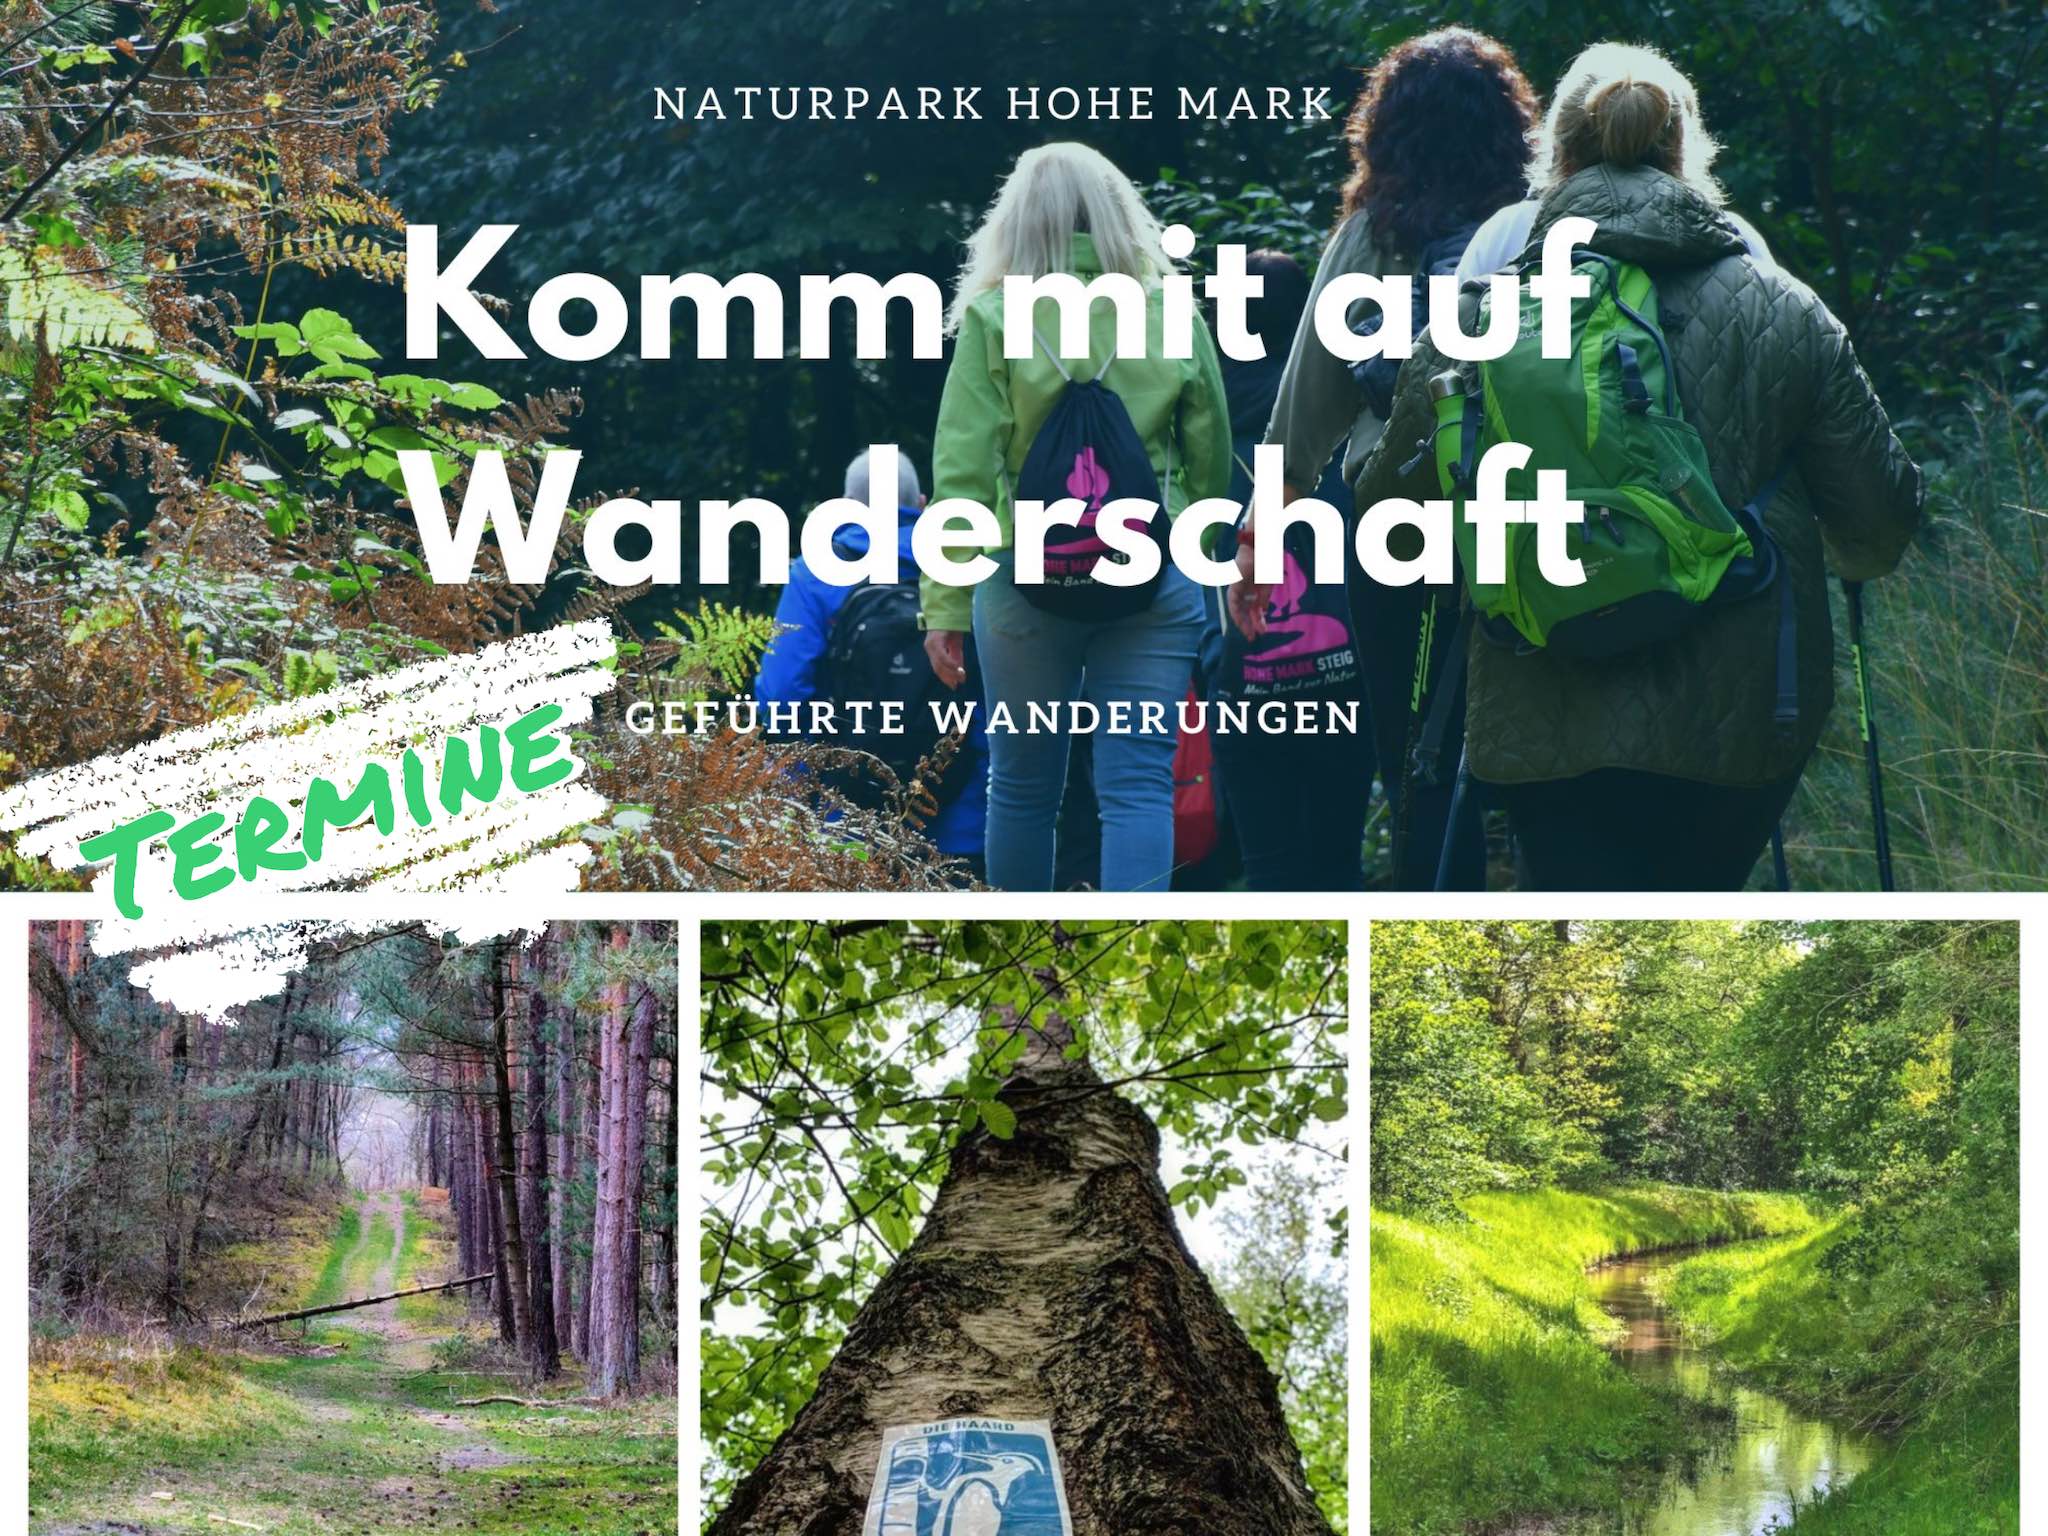 Komm mit auf Wanderschaft – Geführte Wanderungen durch den Naturpark Hohe Mark.